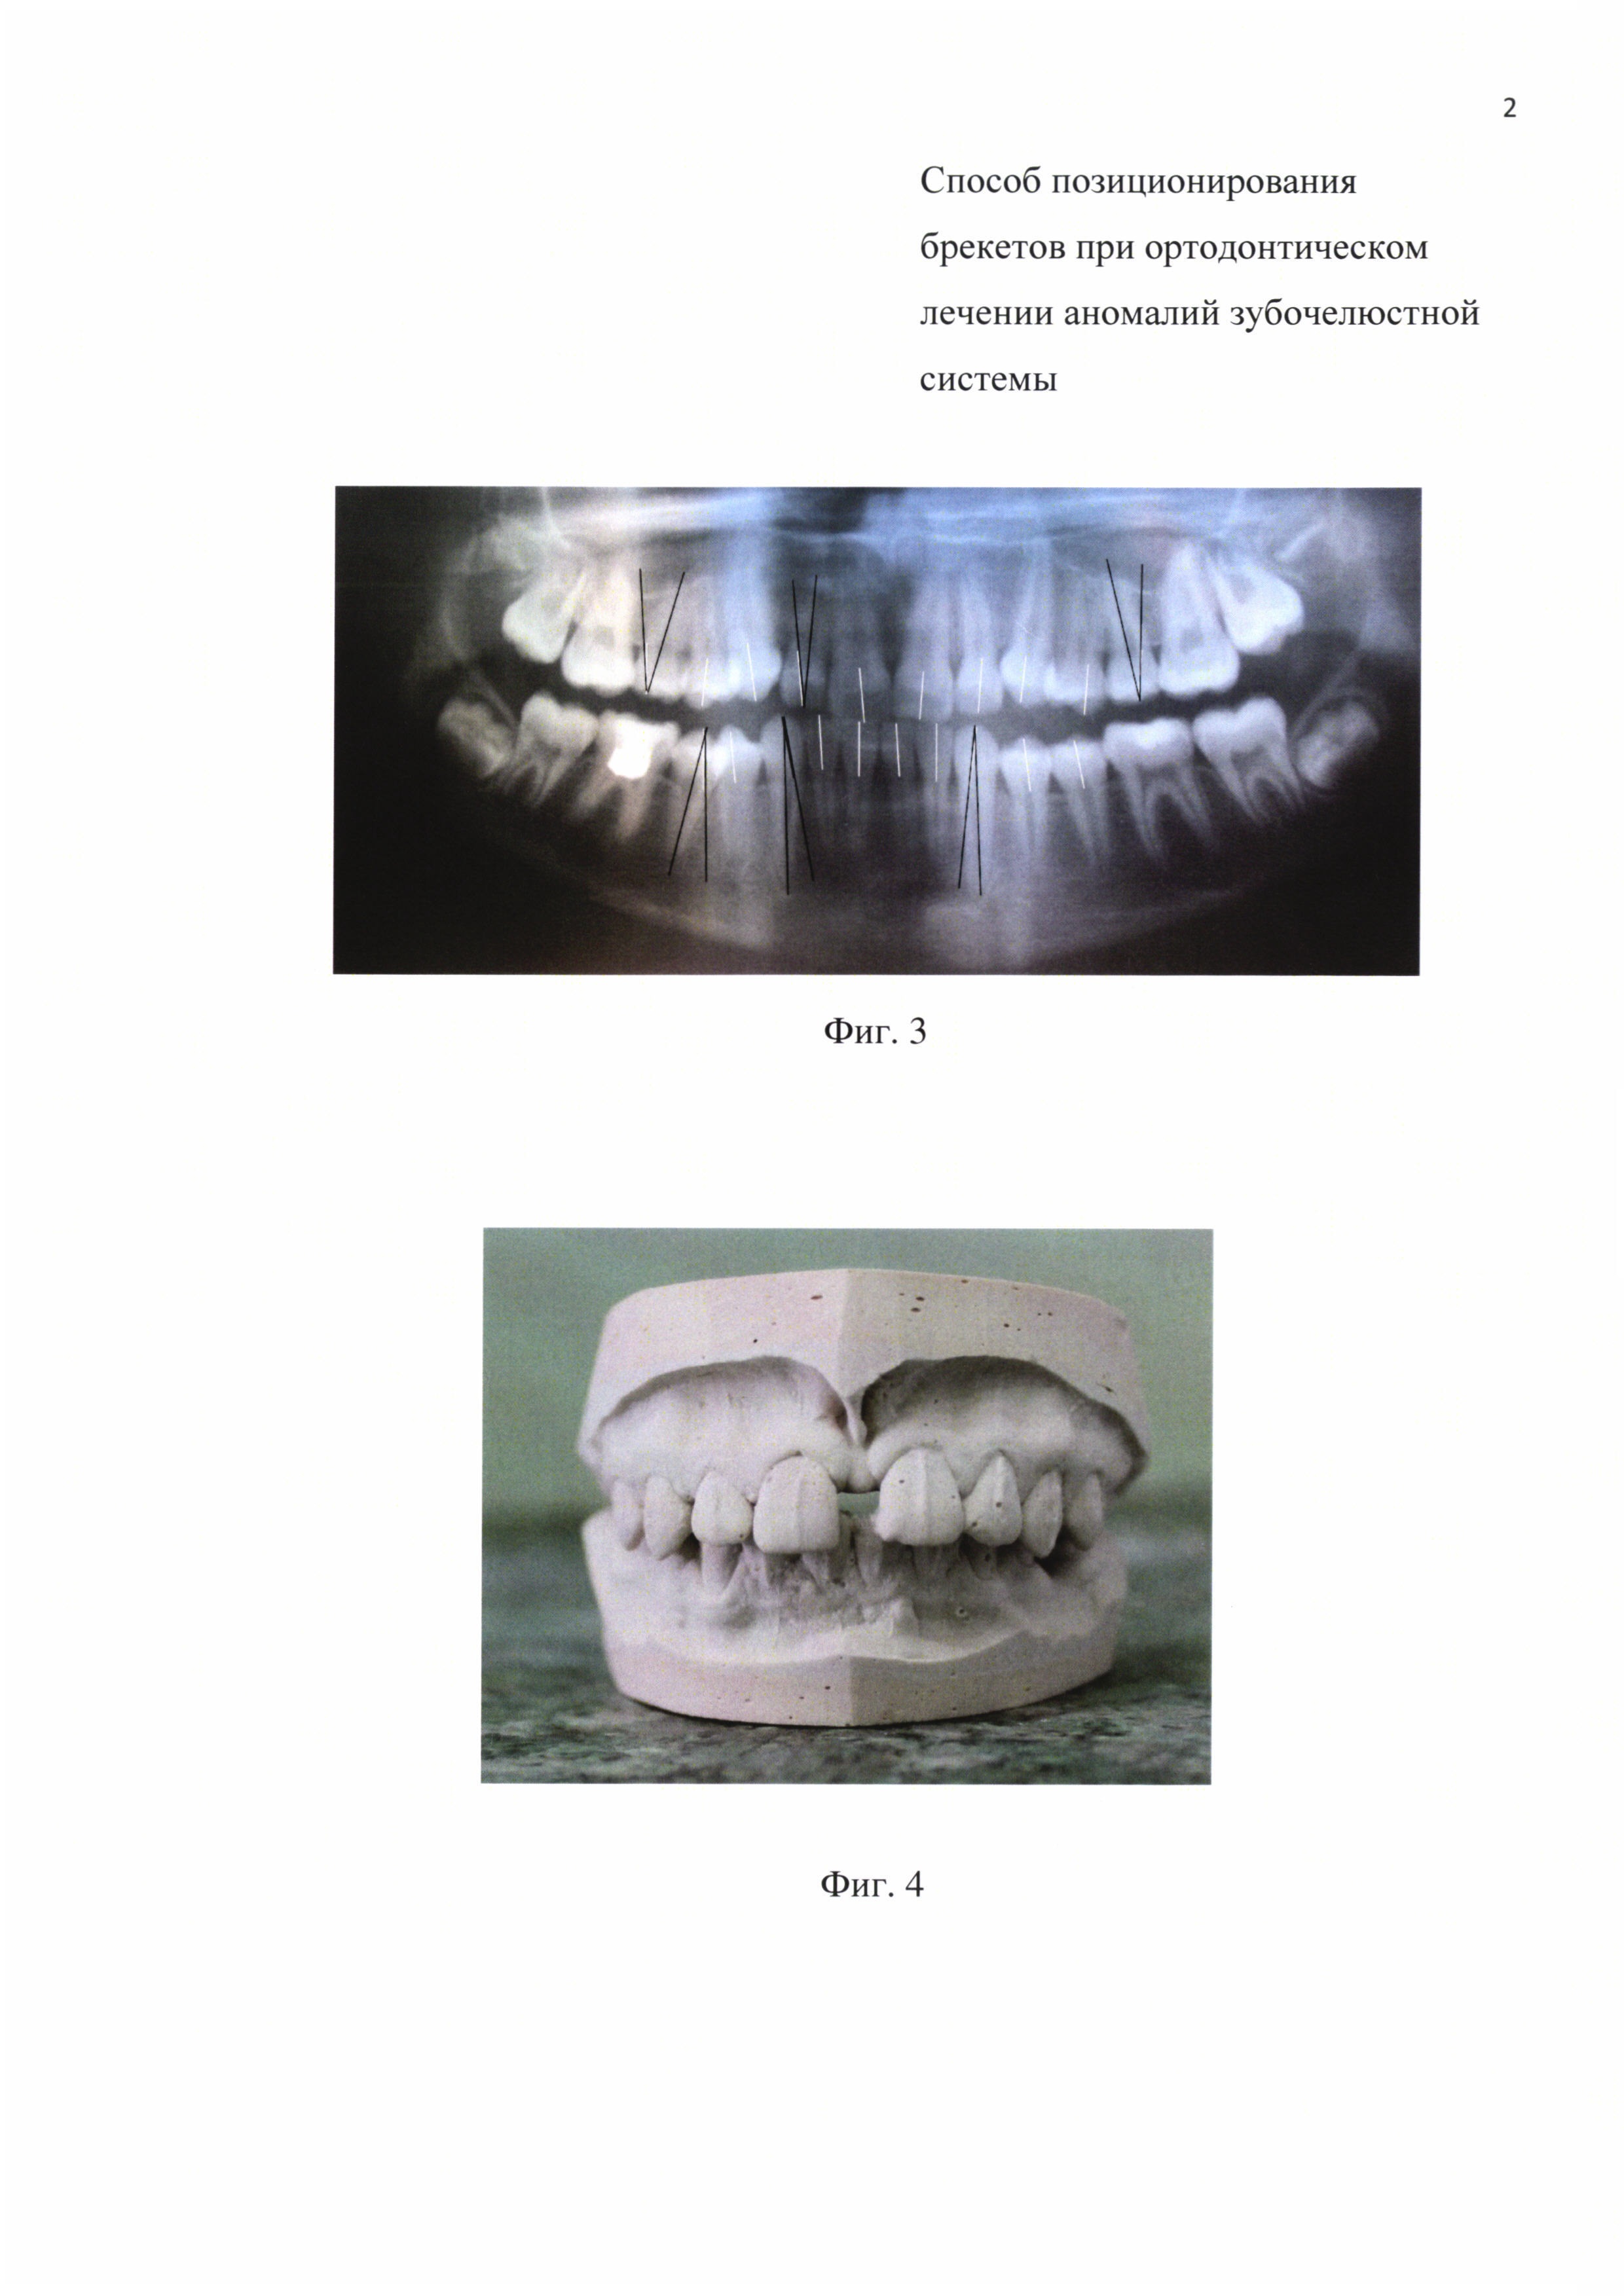 Способ позиционирования брекетов при ортодонтическом лечении аномалий зубочелюстной системы